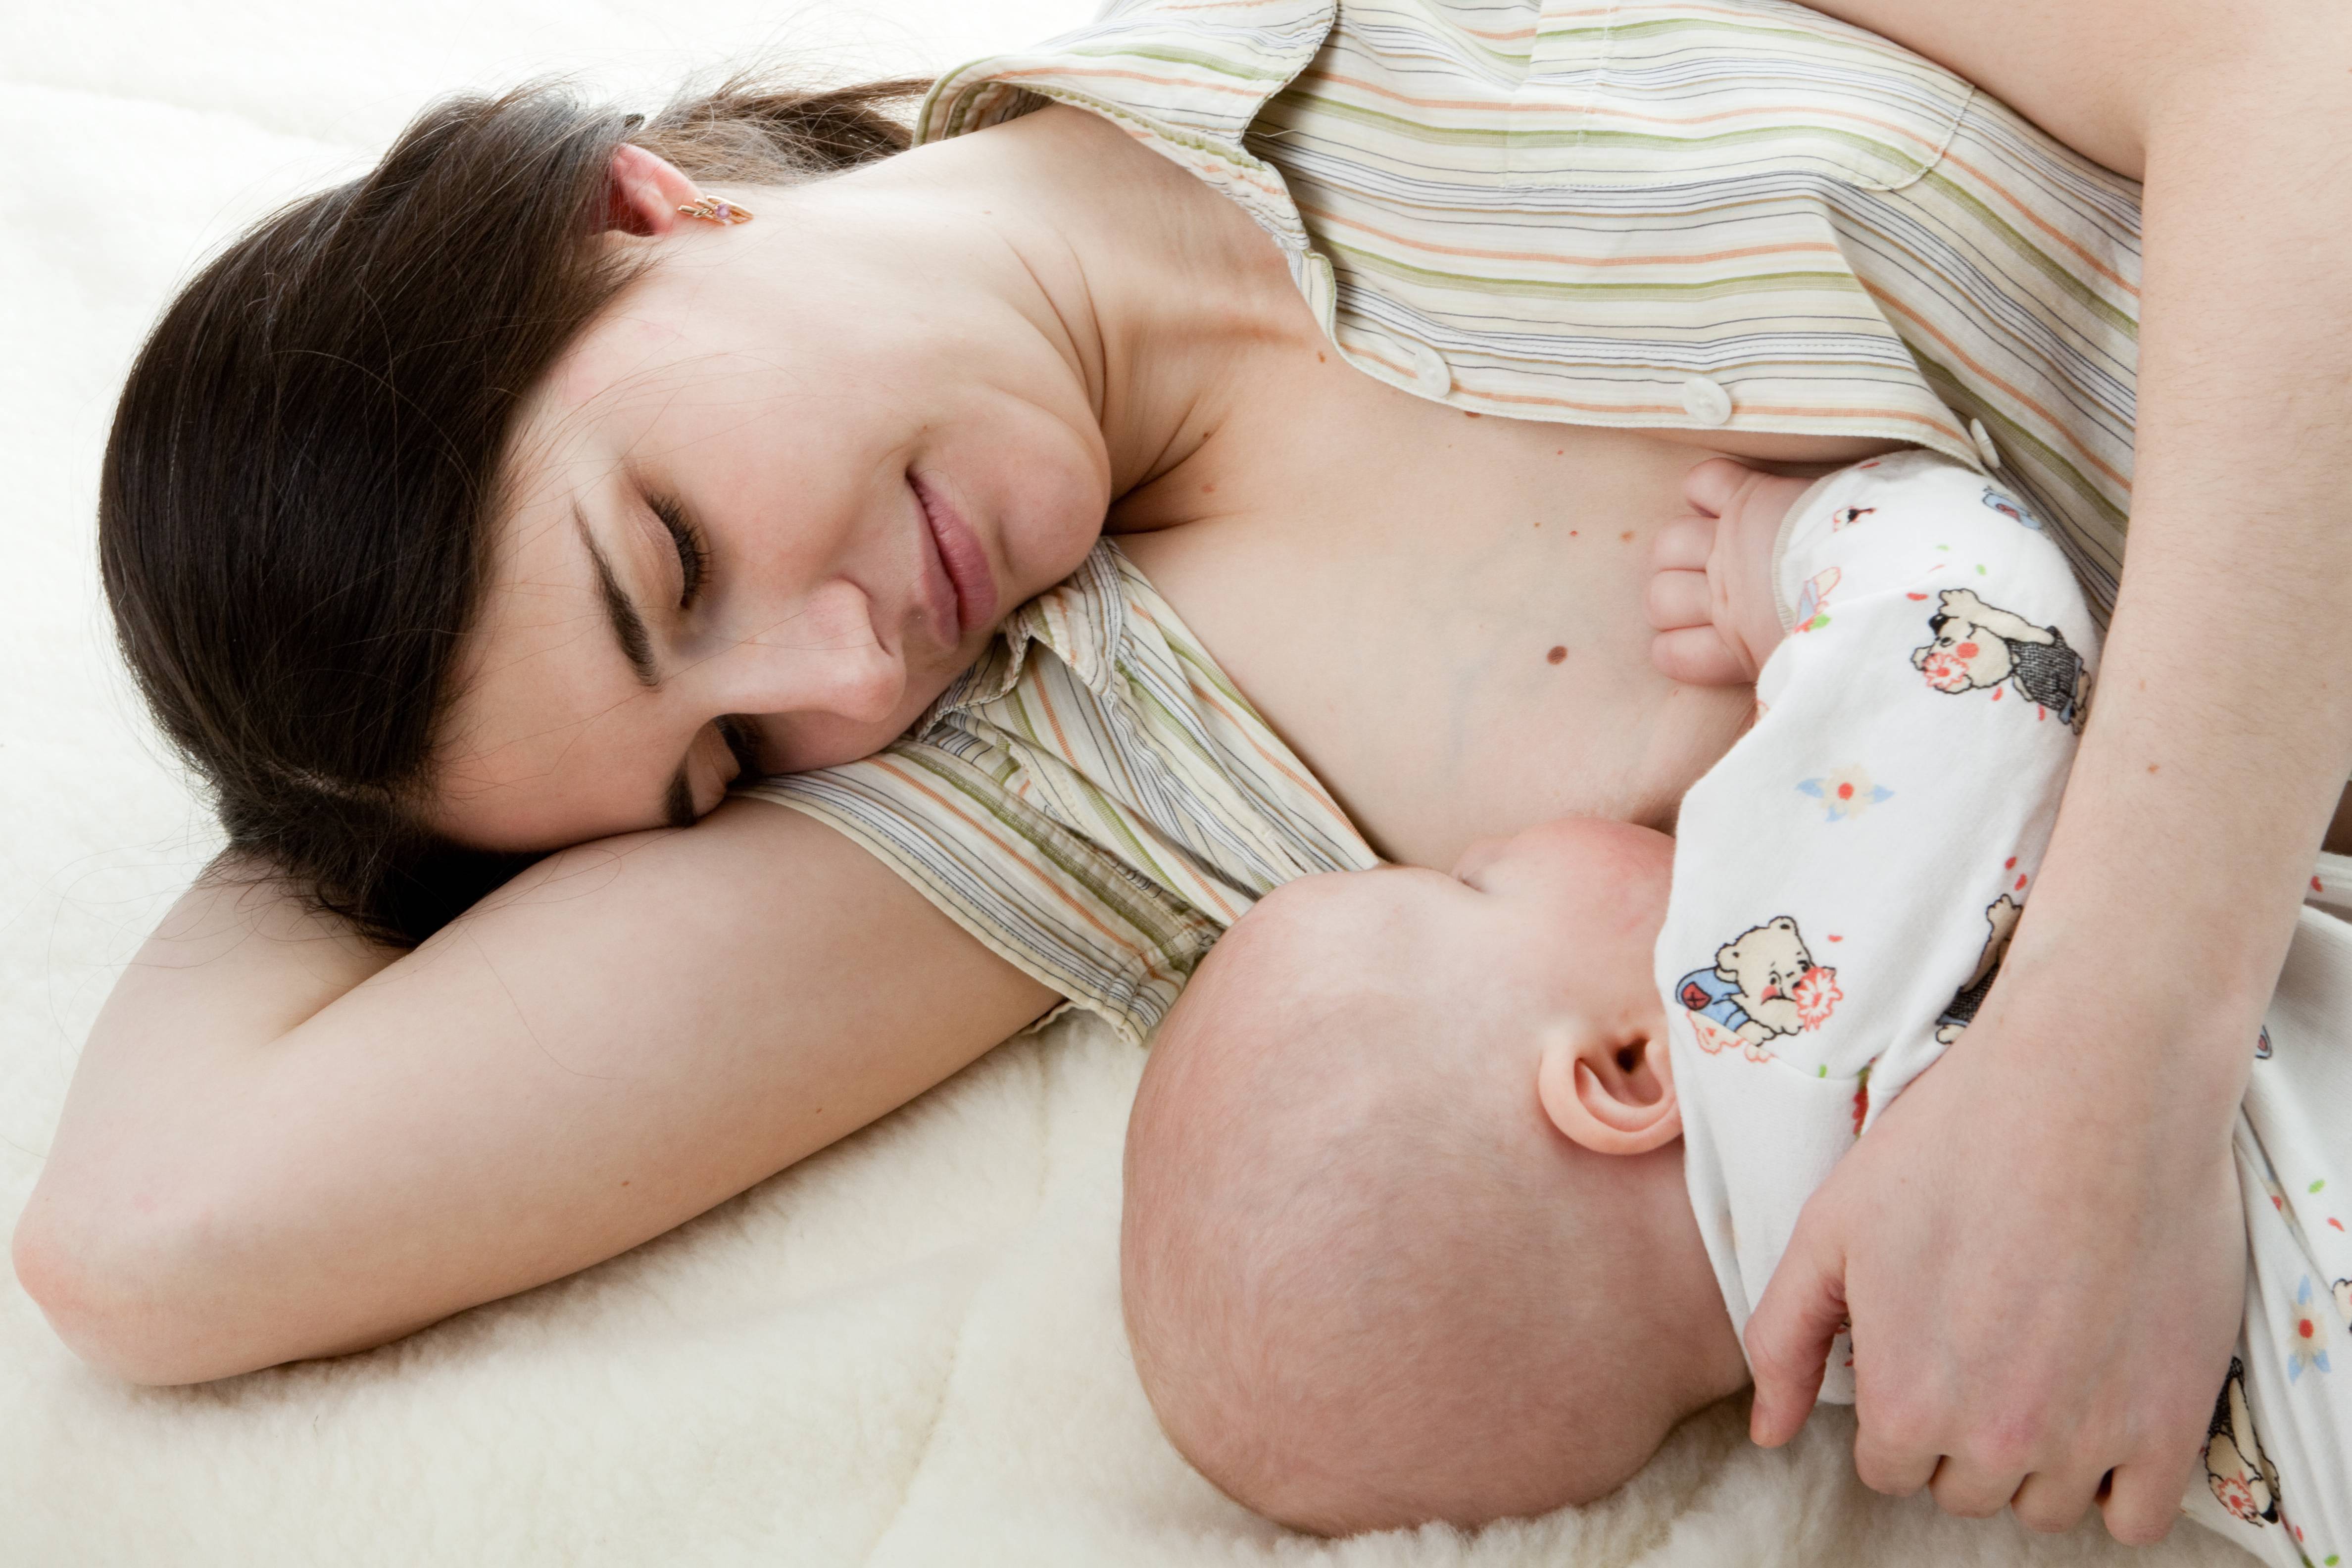 Грудное вскармливание новорожденных: советы (часть 1)